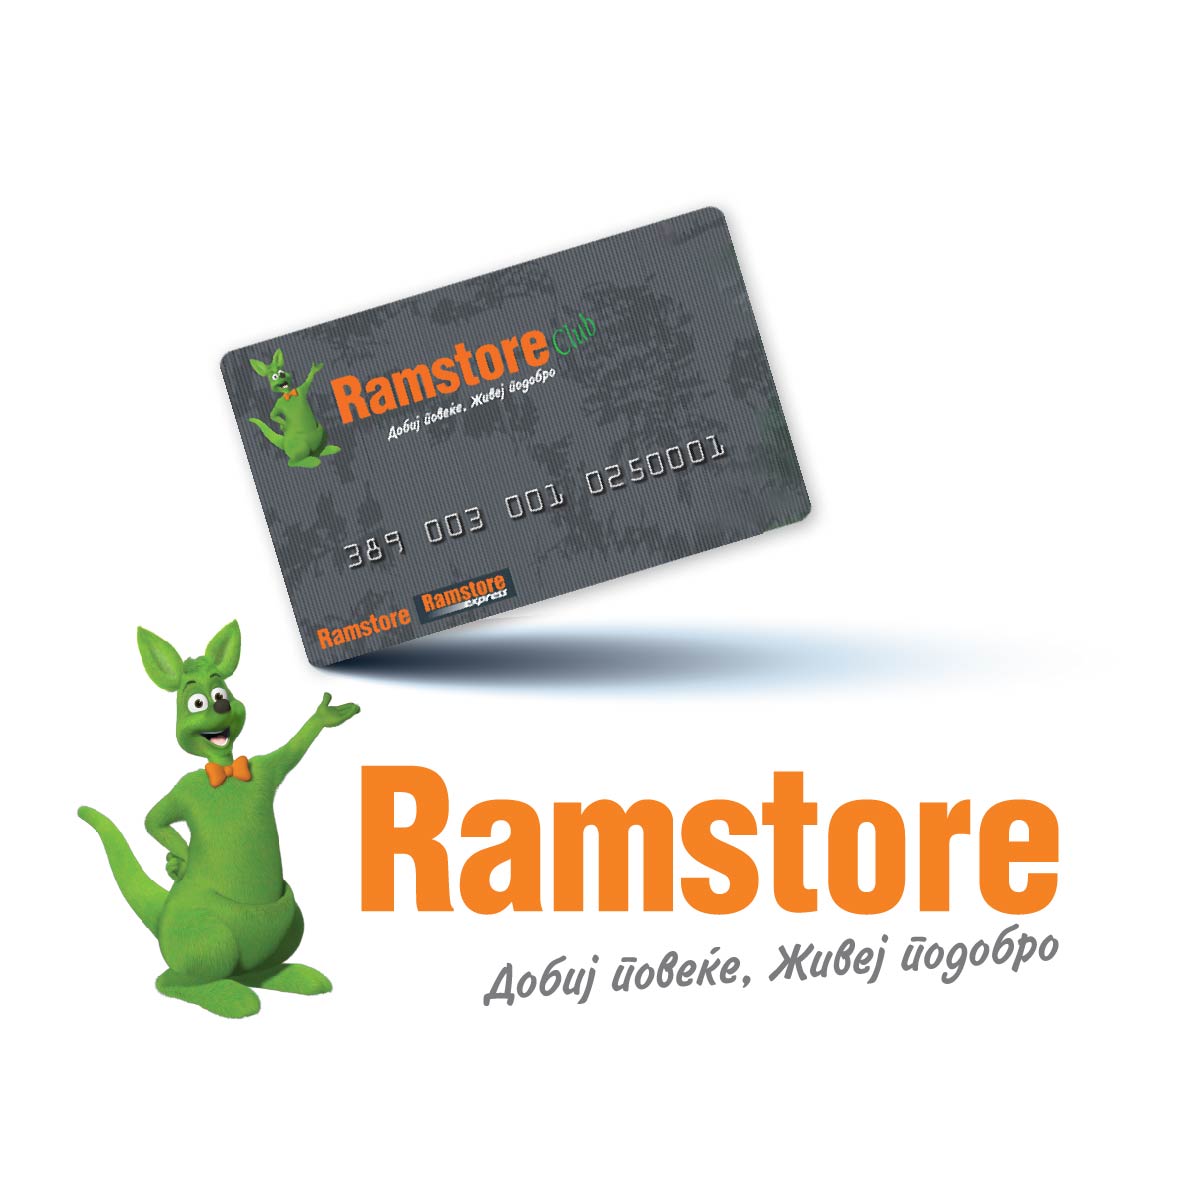 Ramstor logo so kartichka